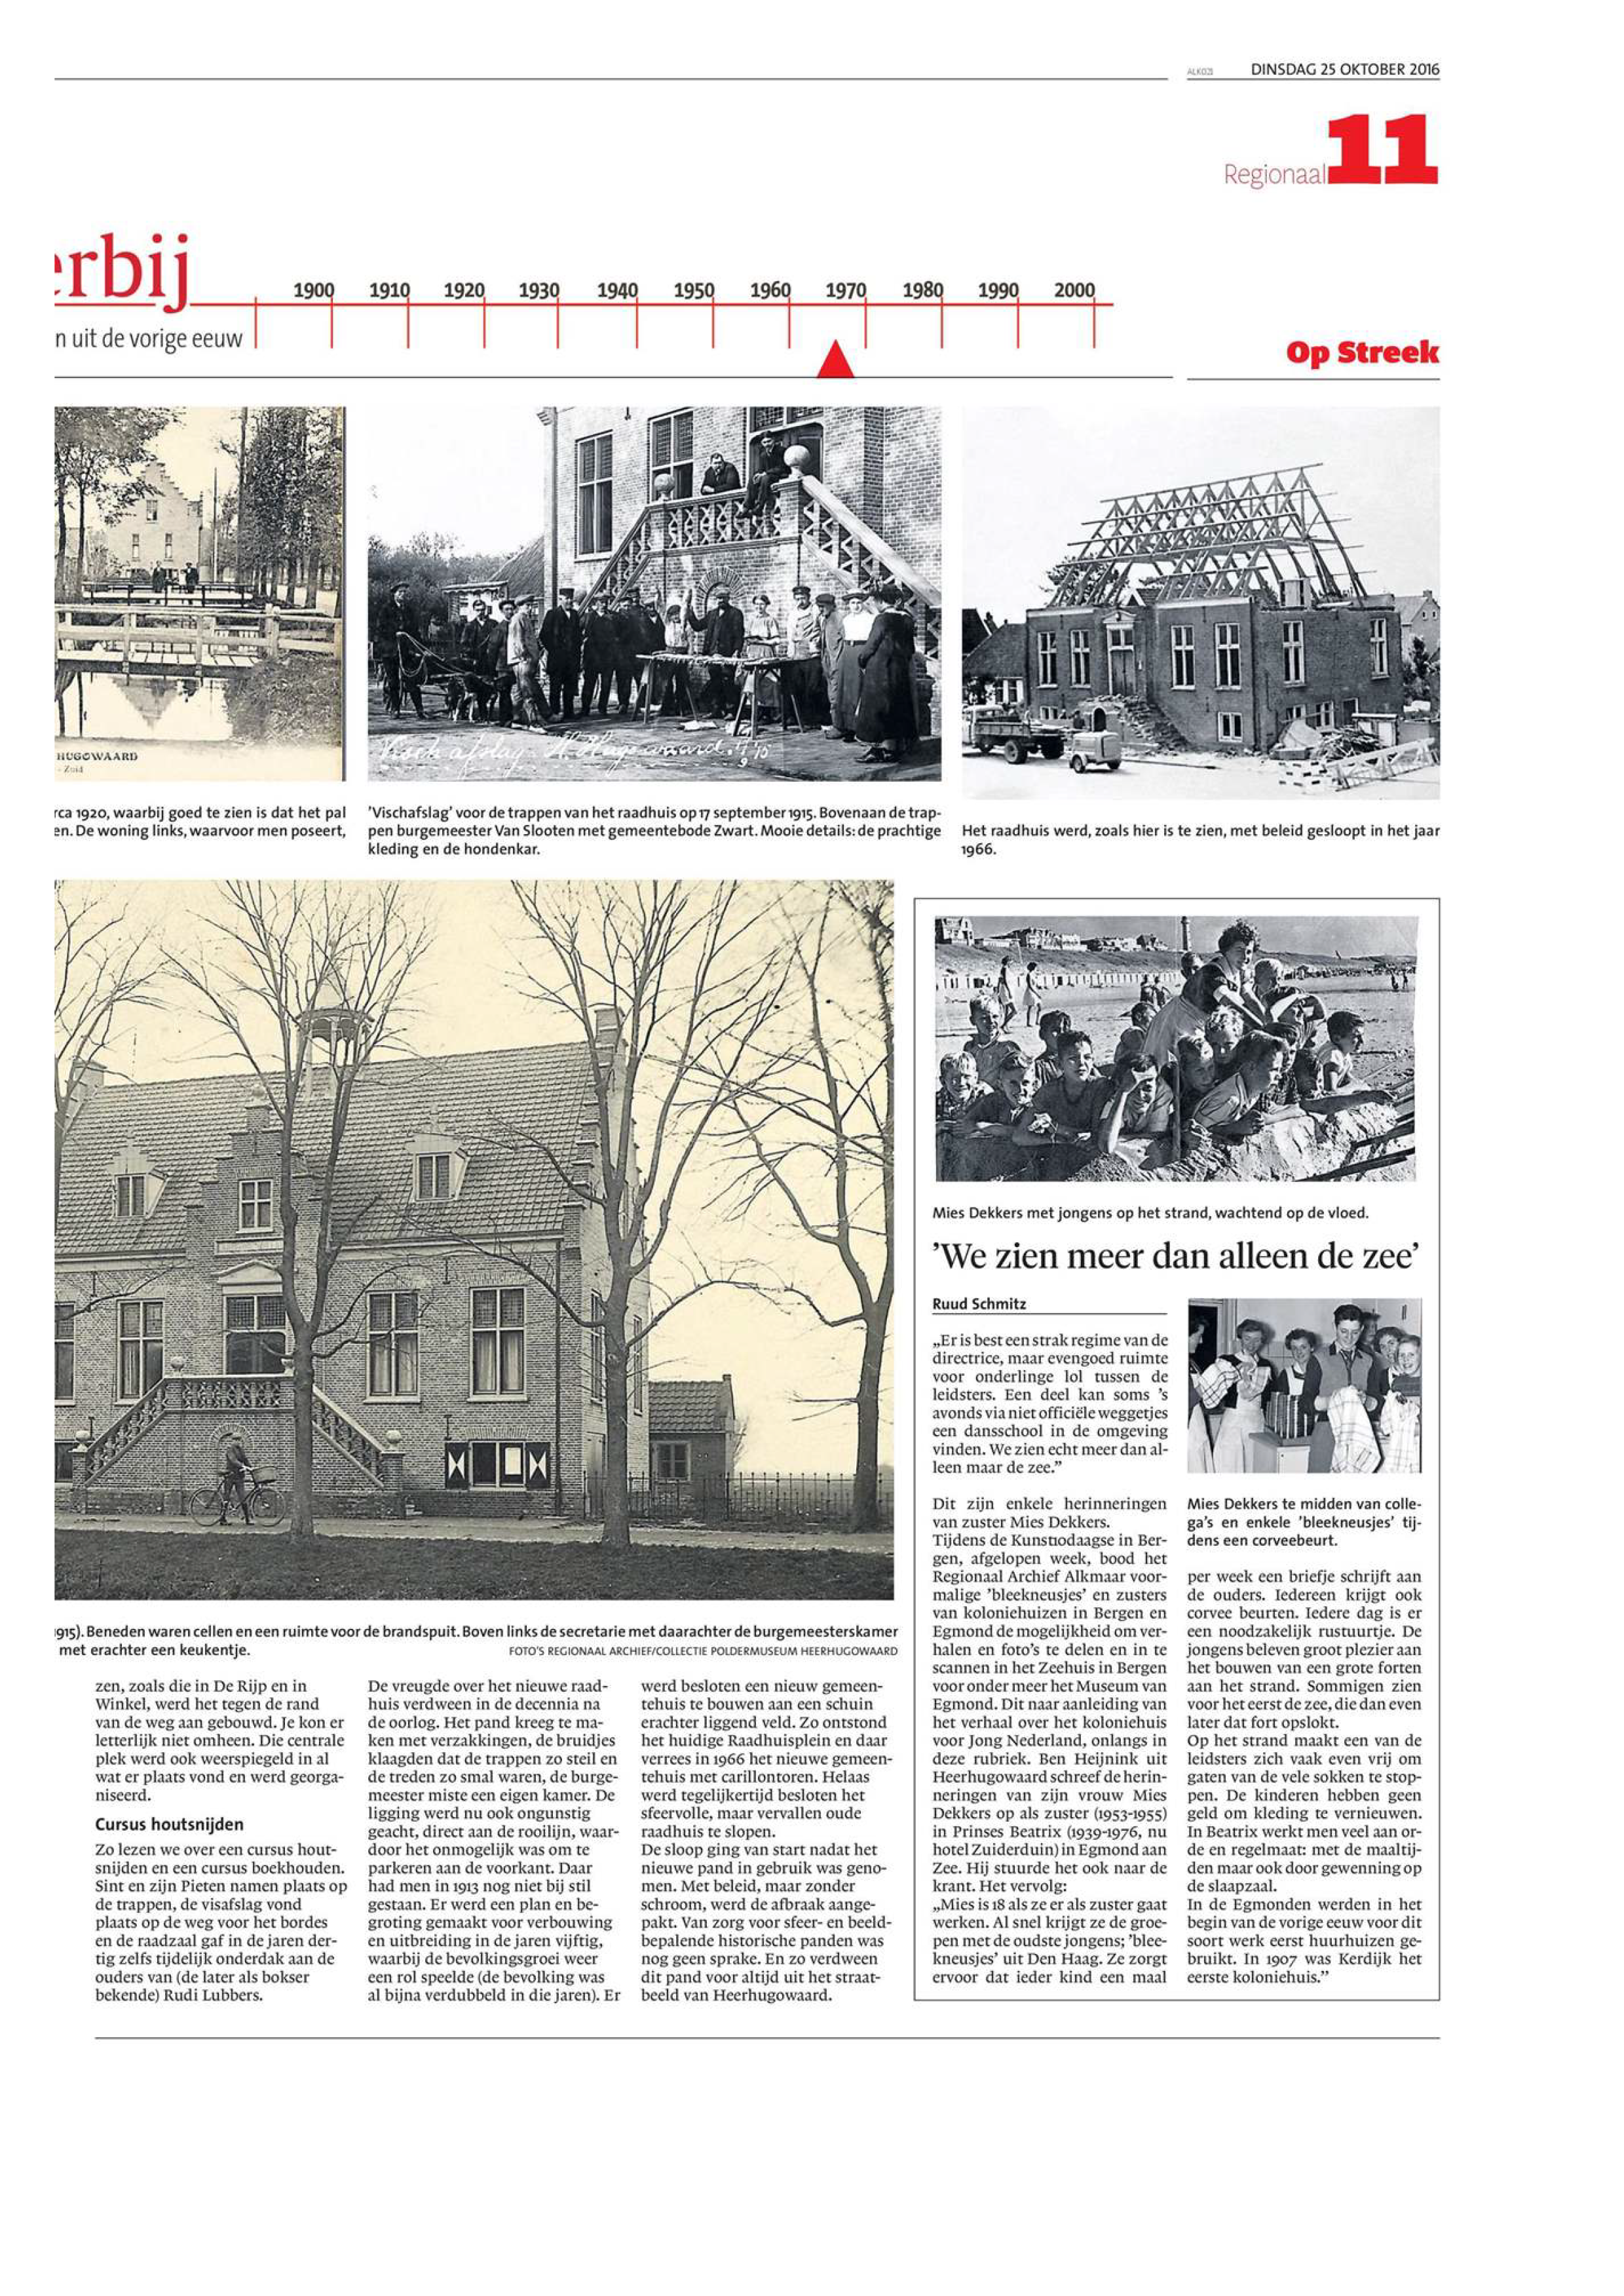 Artikel in het Noord Hollands Dagblad, naar aanleiding van de tentoonstelling